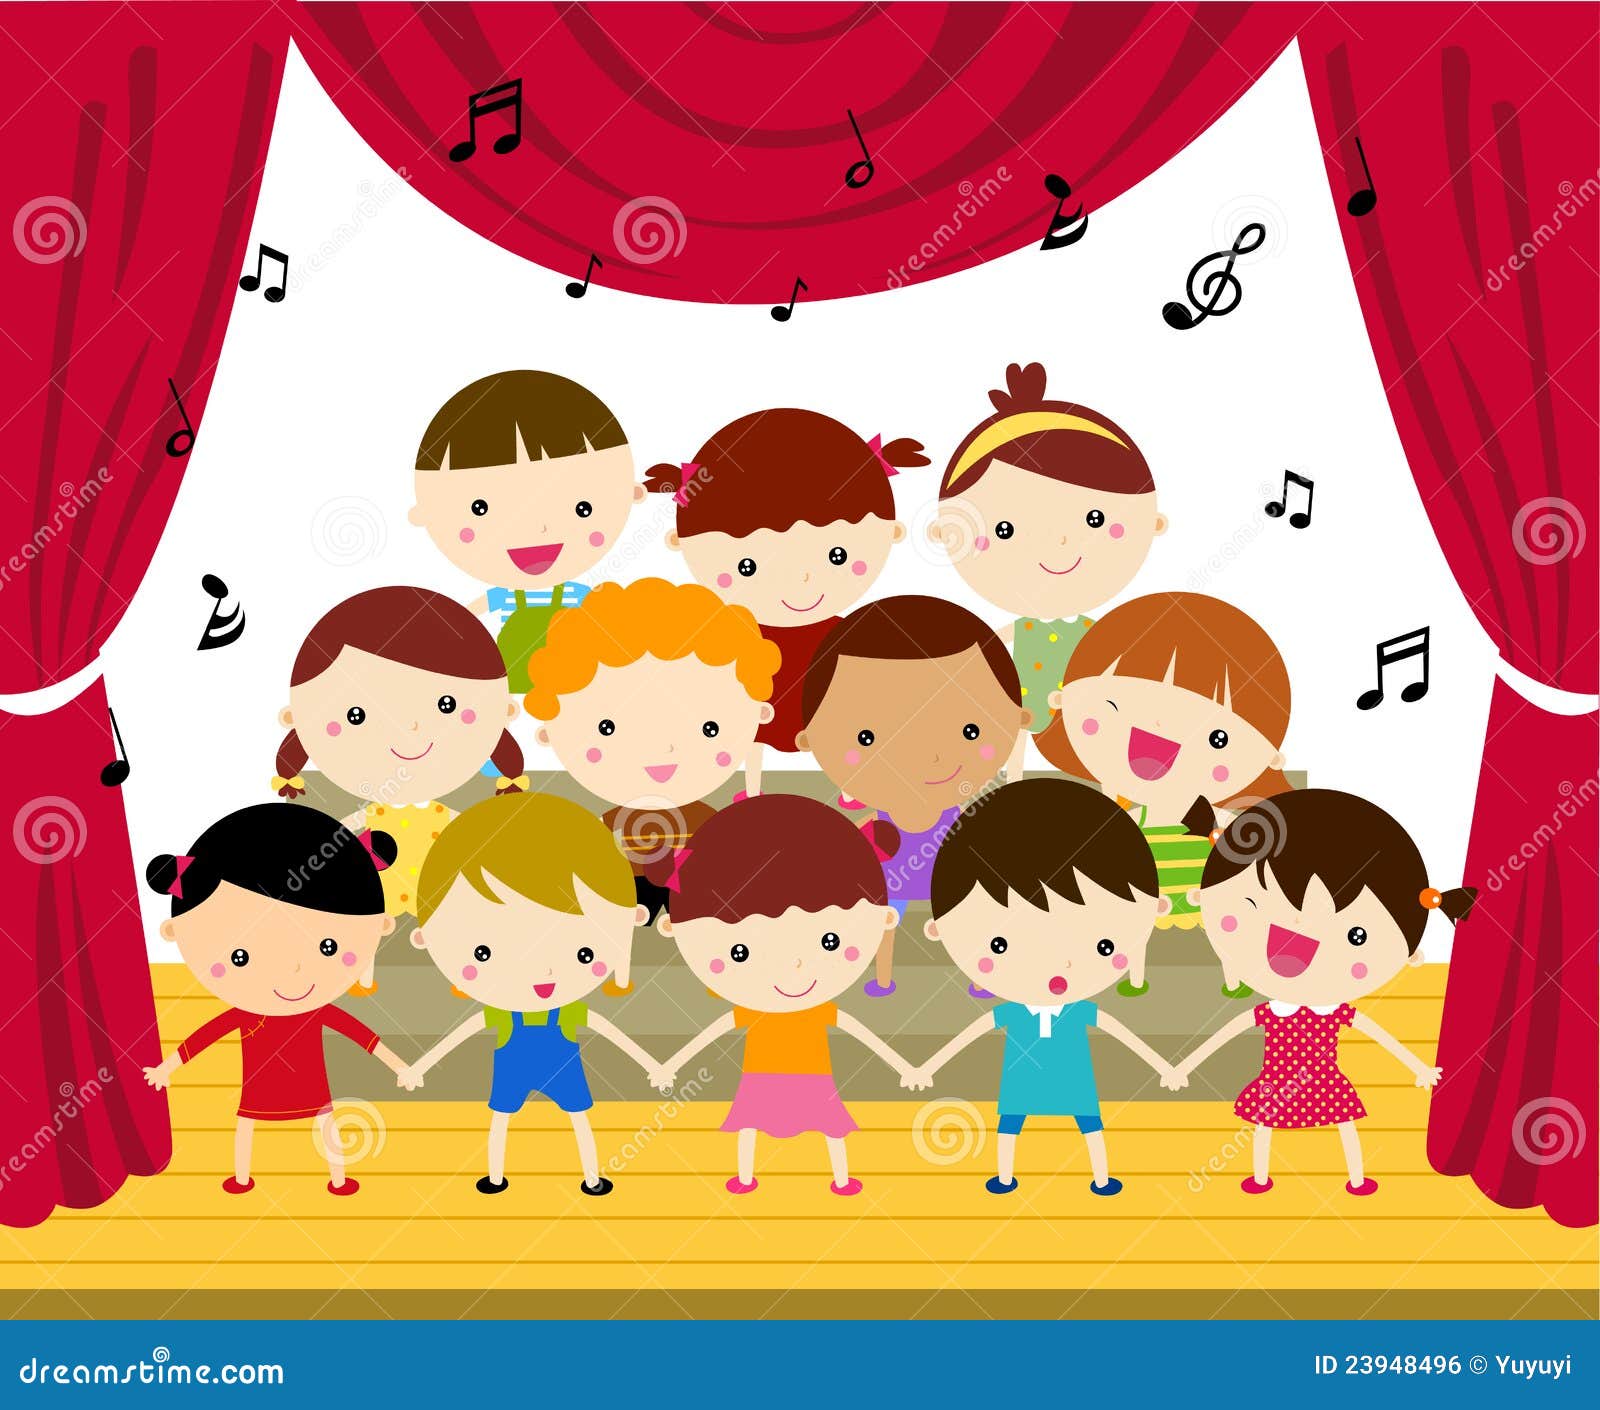 cartoon childrens choir clipart